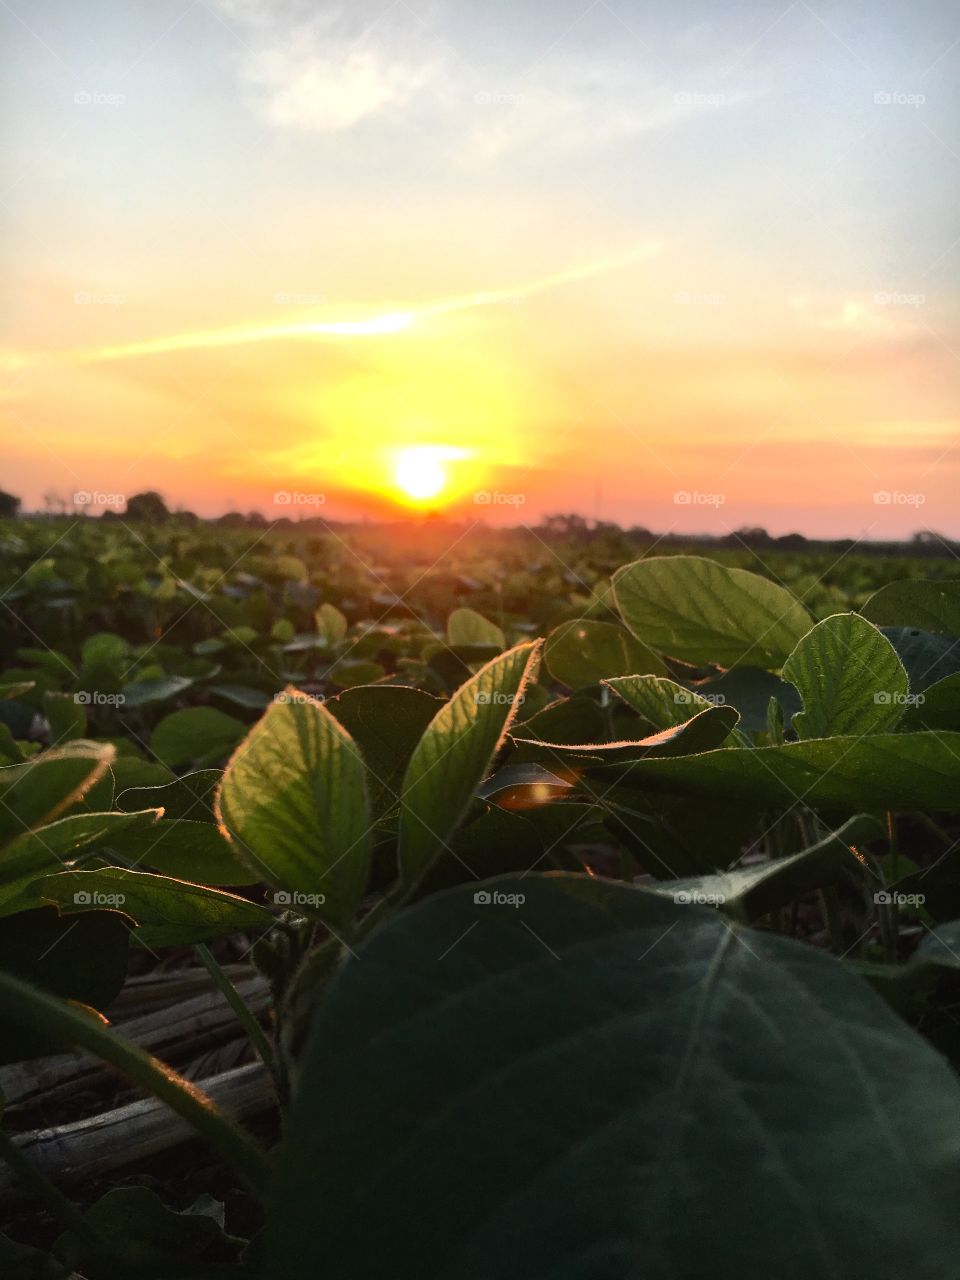 soybean at dusk